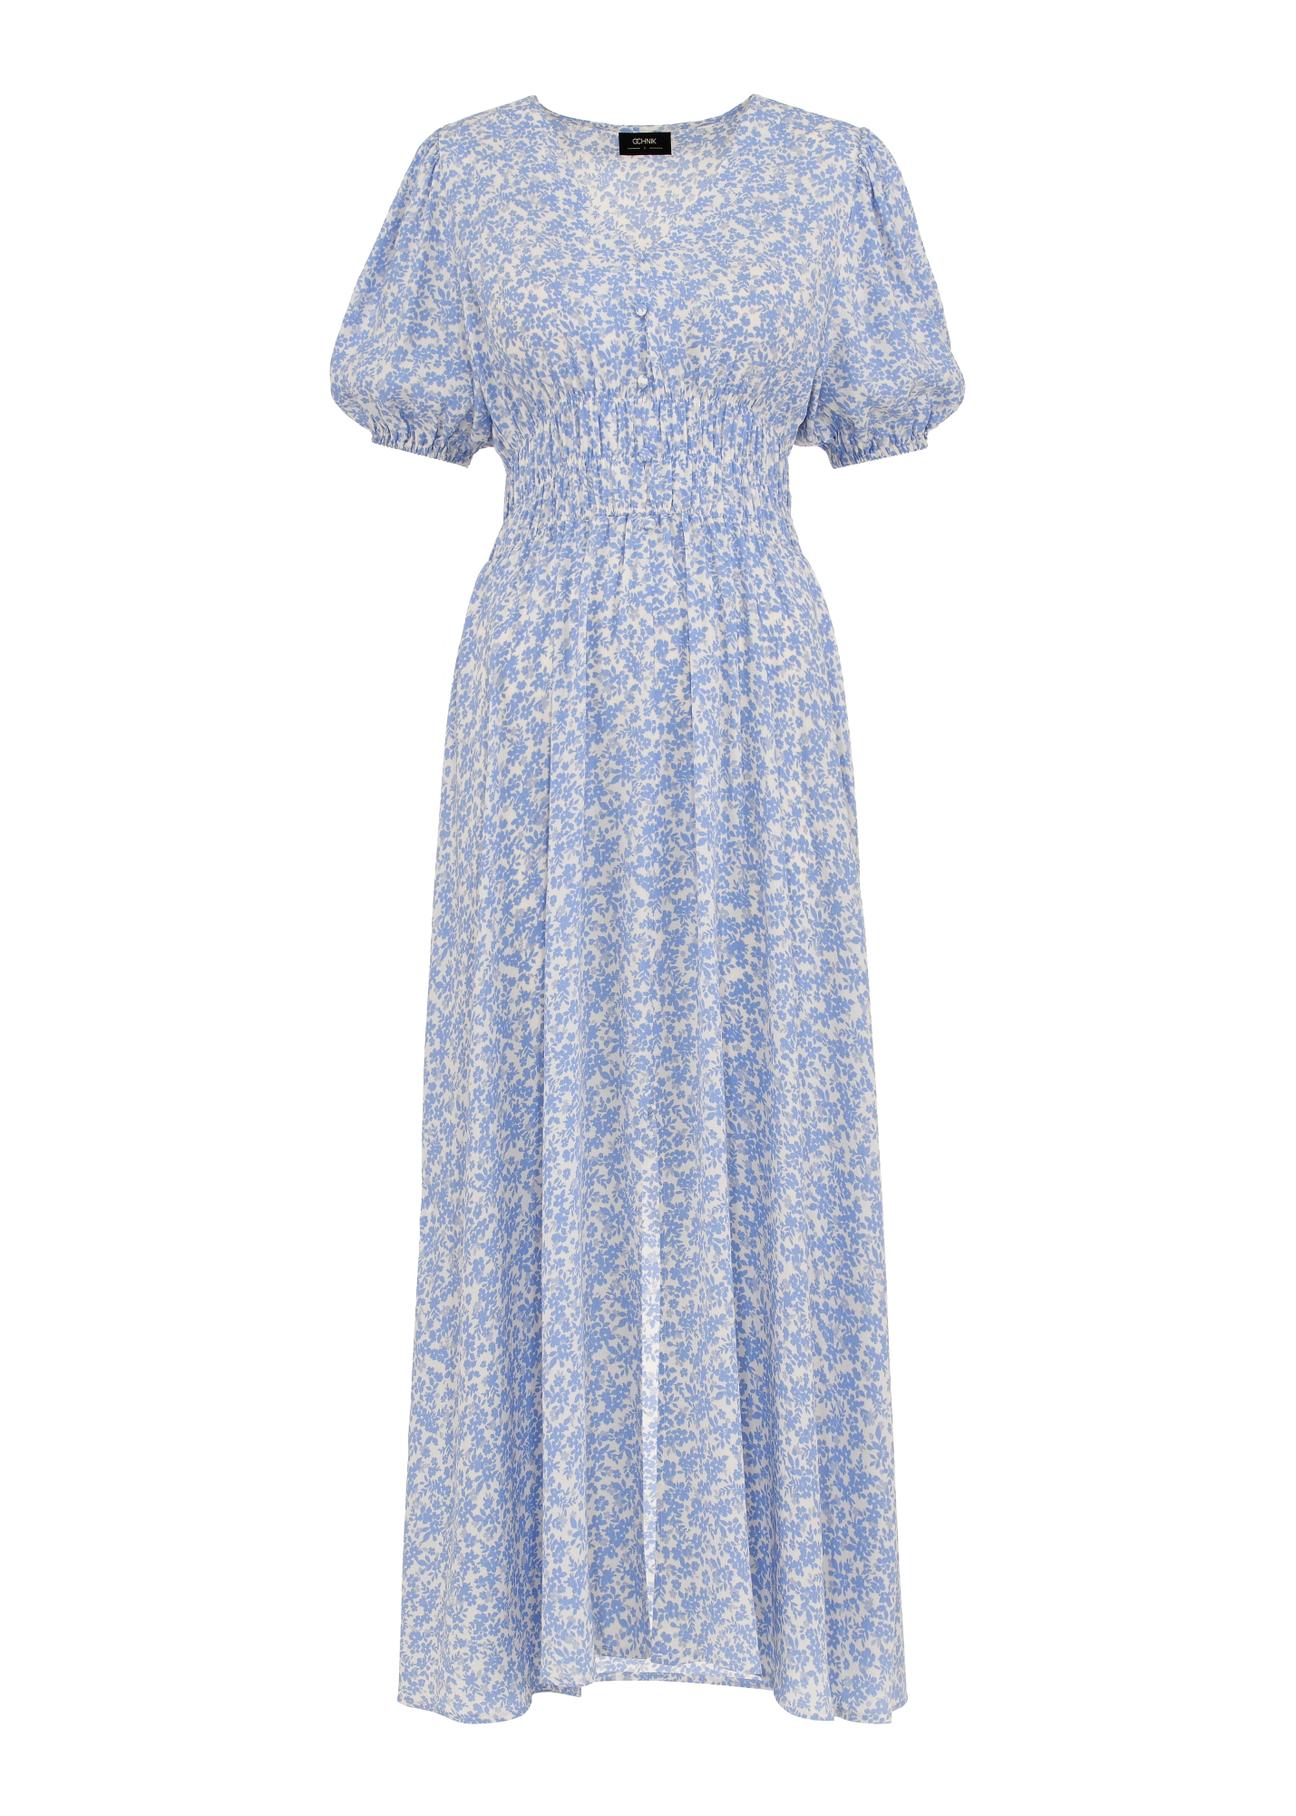 Długa błękitna sukienka letnia w kwiaty SUKDT-0191-12(W24)